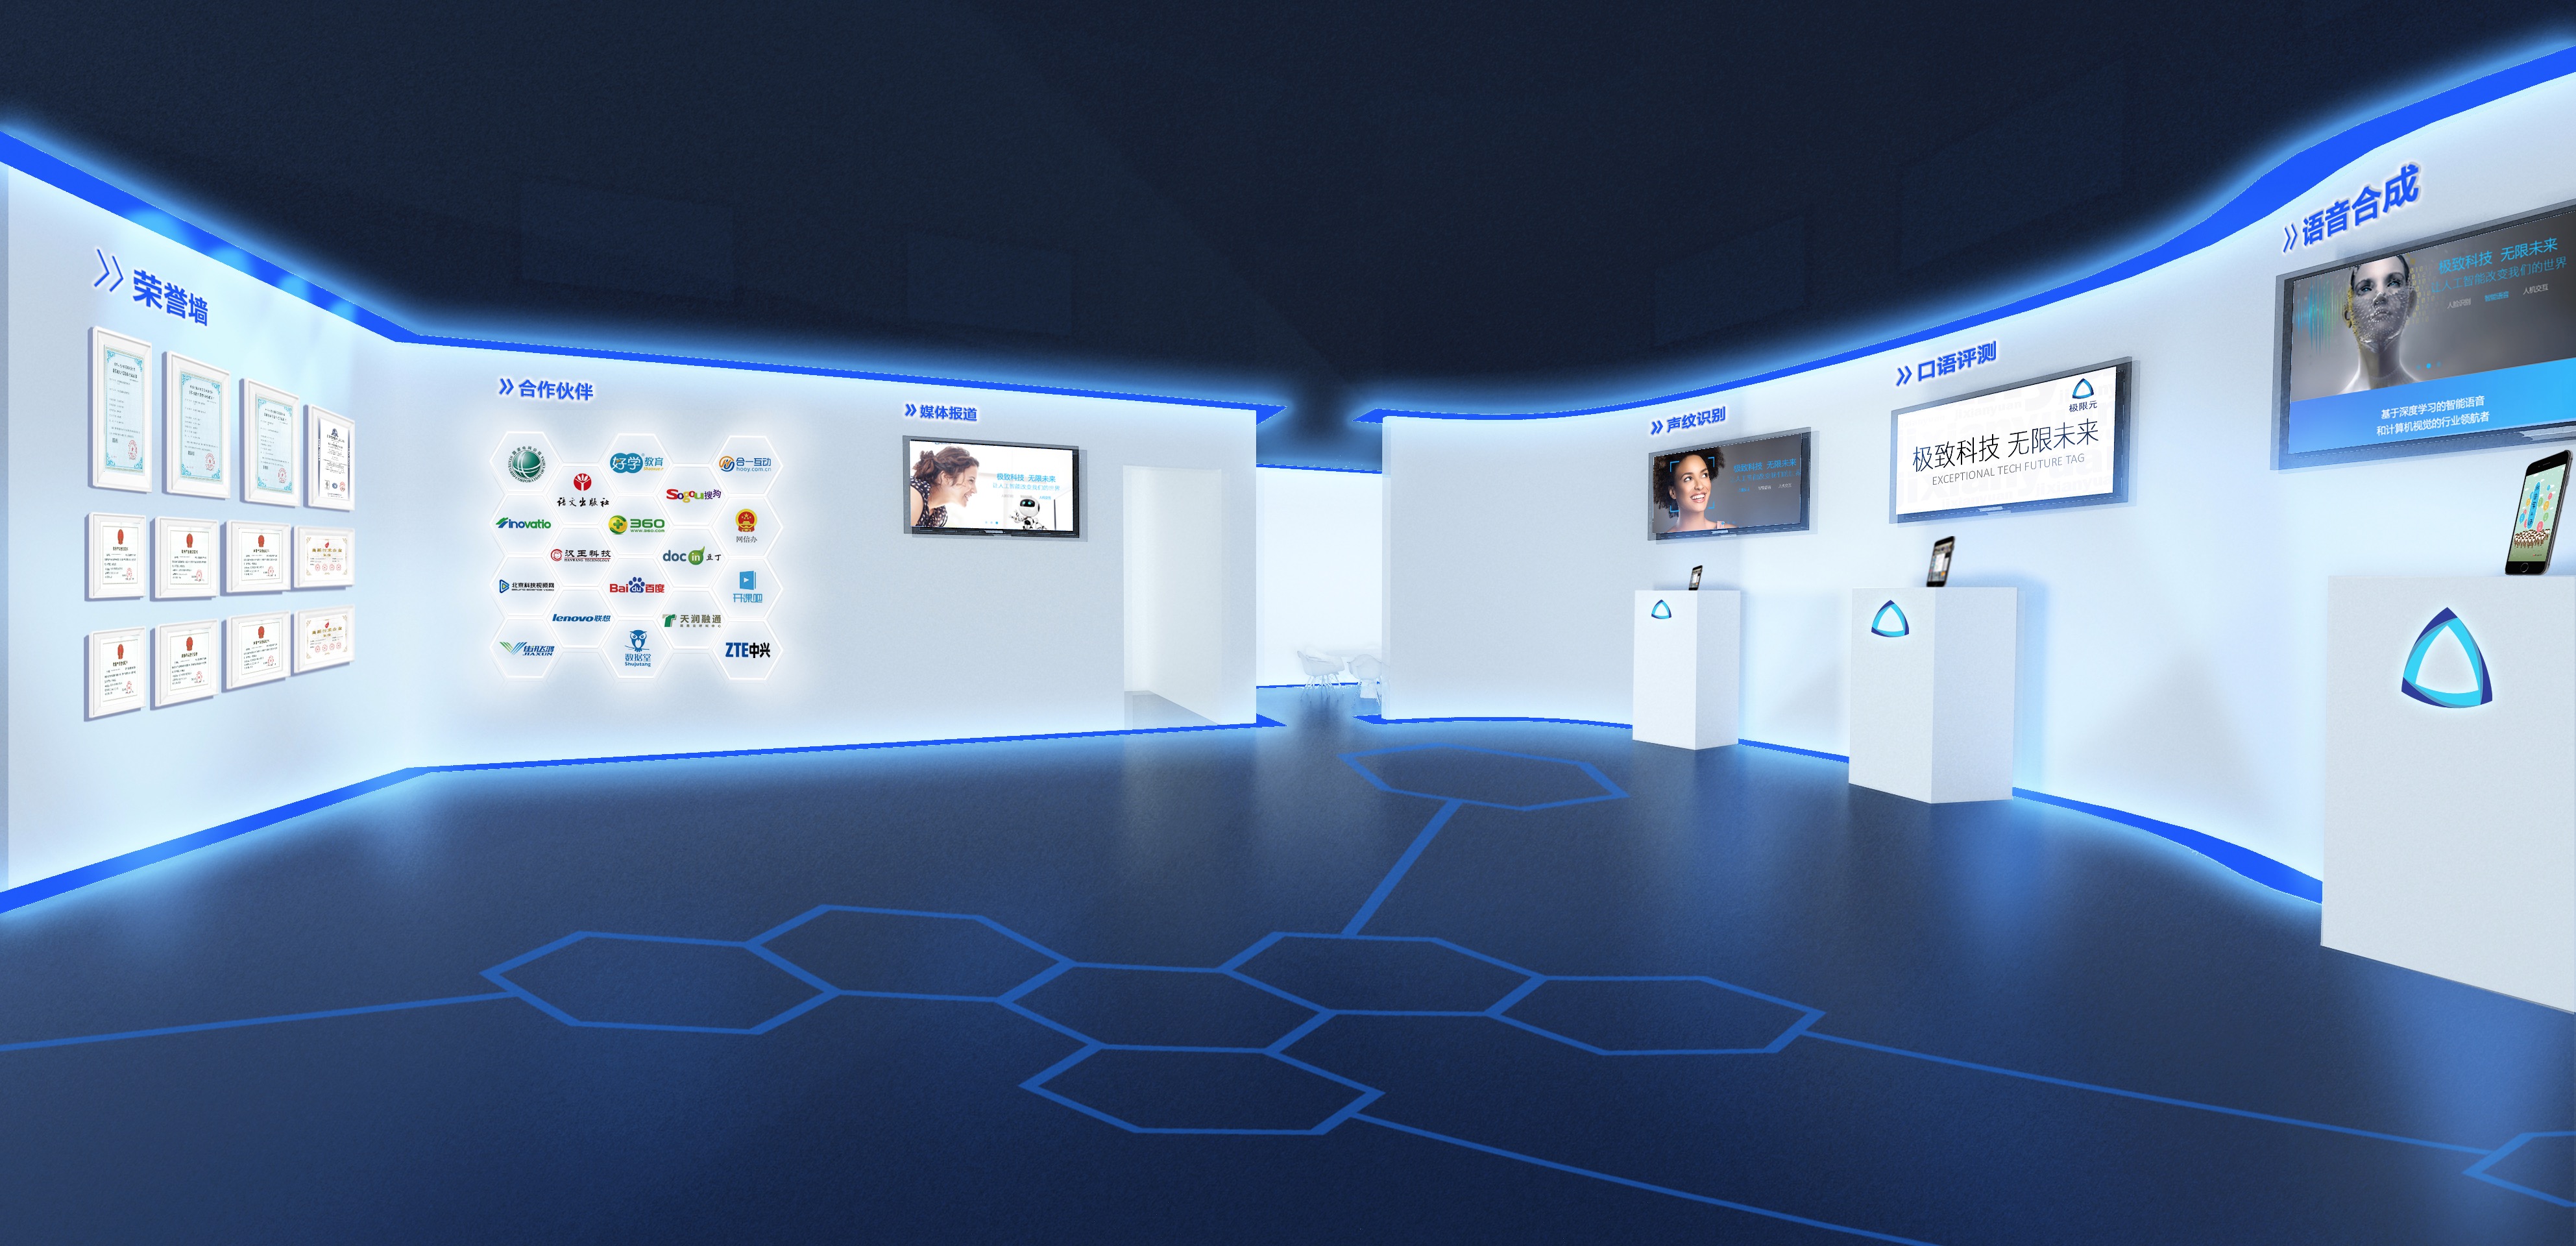 这是一张展示现代科技感展览室的图片，内部以蓝色为主色调，墙上装有多个显示屏和信息板。